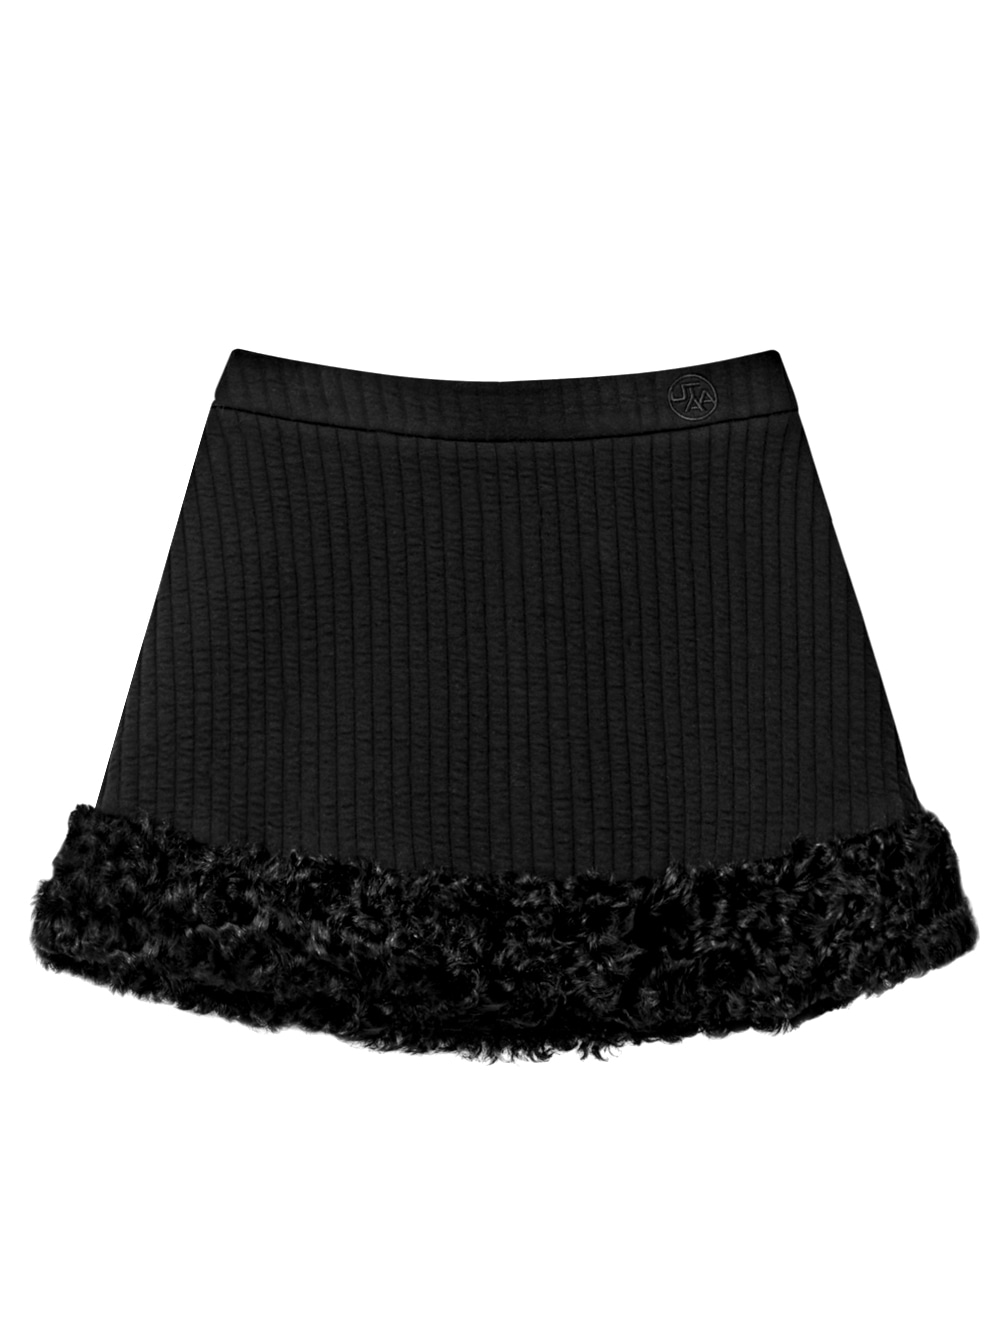 UTAA Duvet Wool Basic Skirt : Black (UB4SKF592BK)